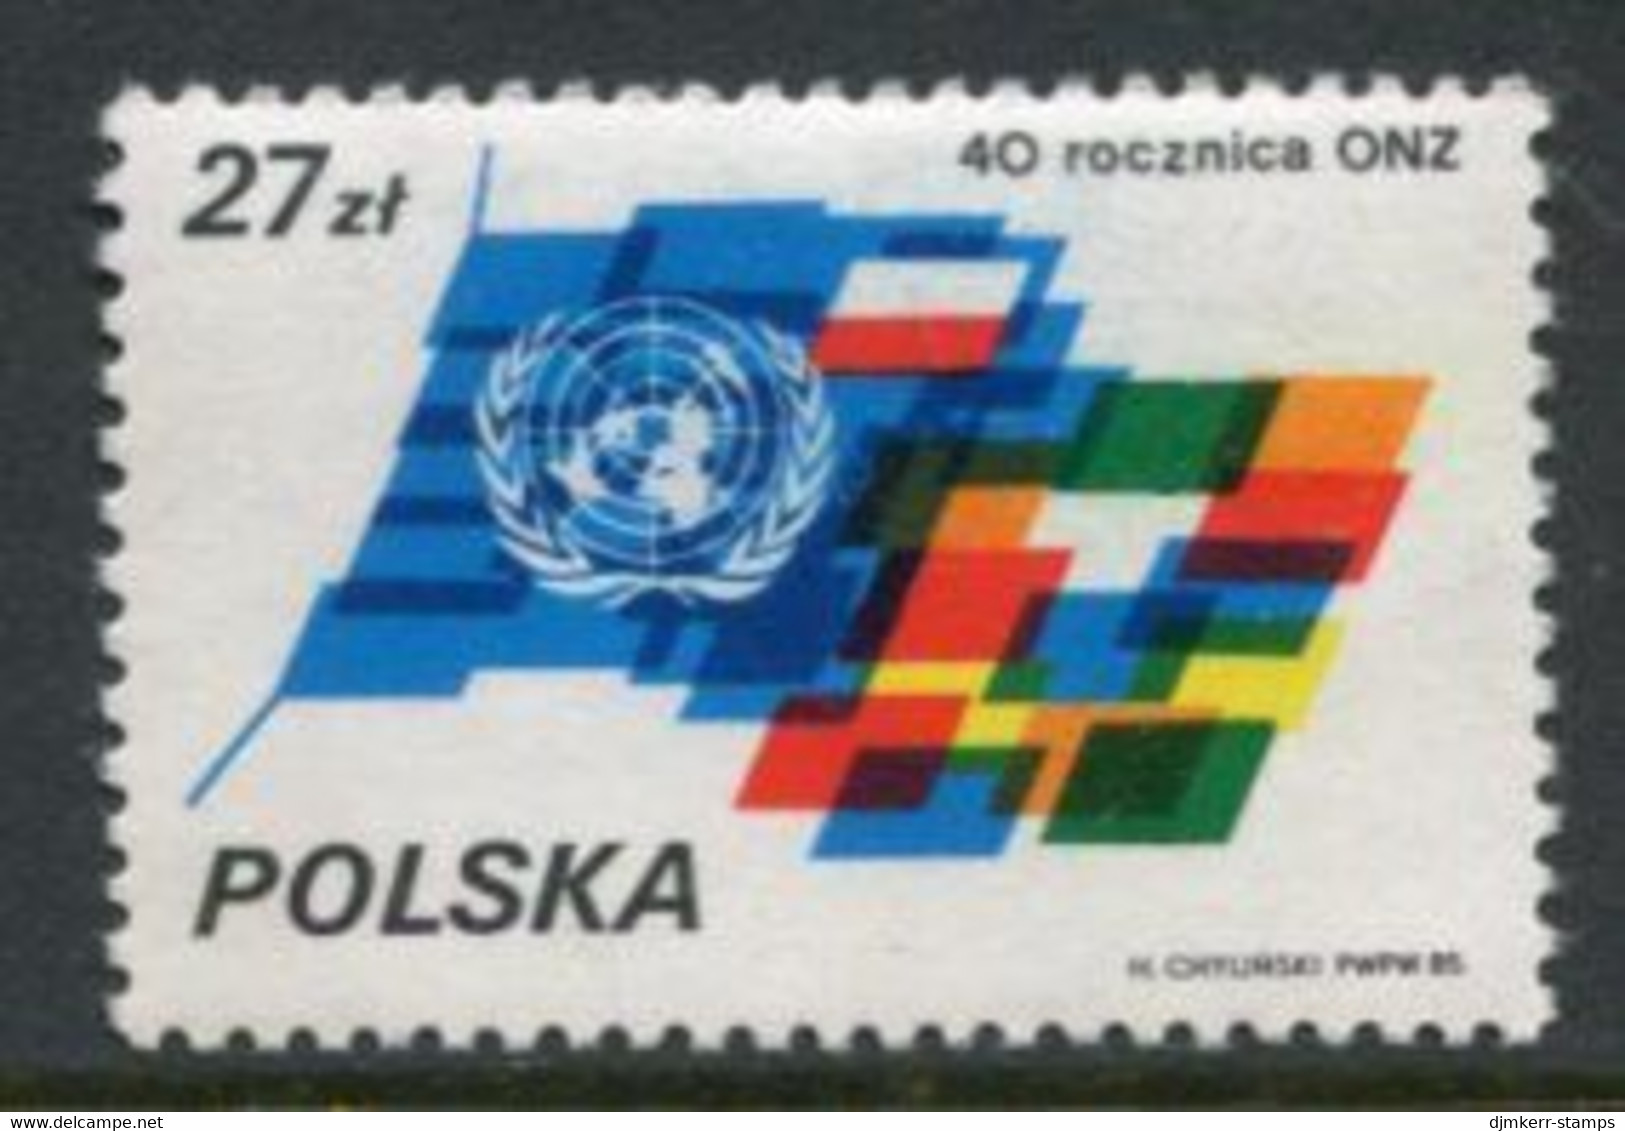 POLAND 1985 UNO Anniversary MNH / **.  Michel 3004 - Unused Stamps